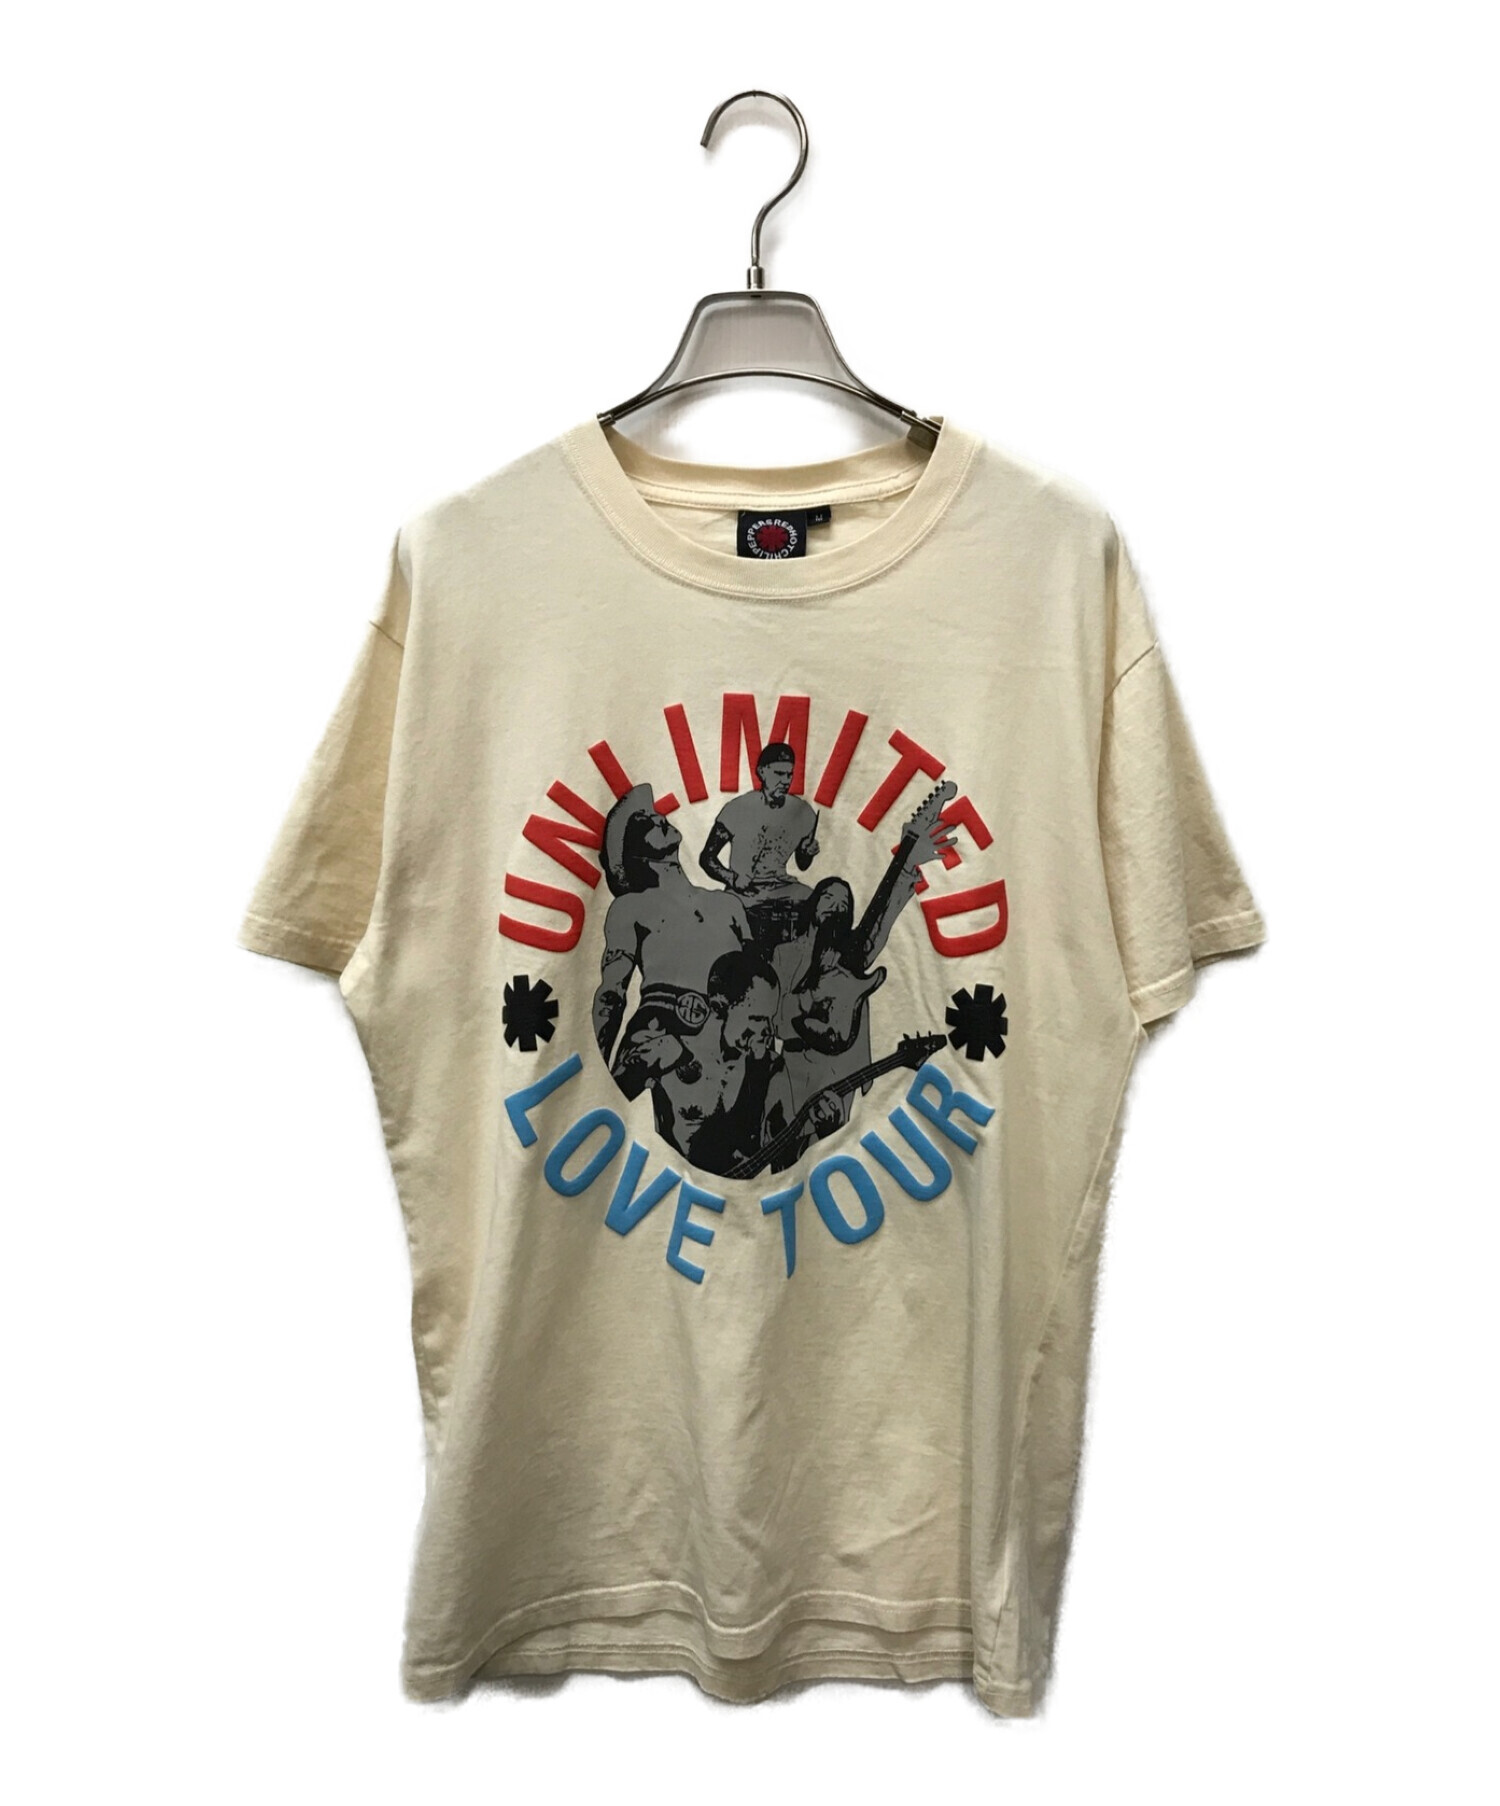 新品レッドホットチリペッパーズ Unlimited Love Tシャツ レッチリ